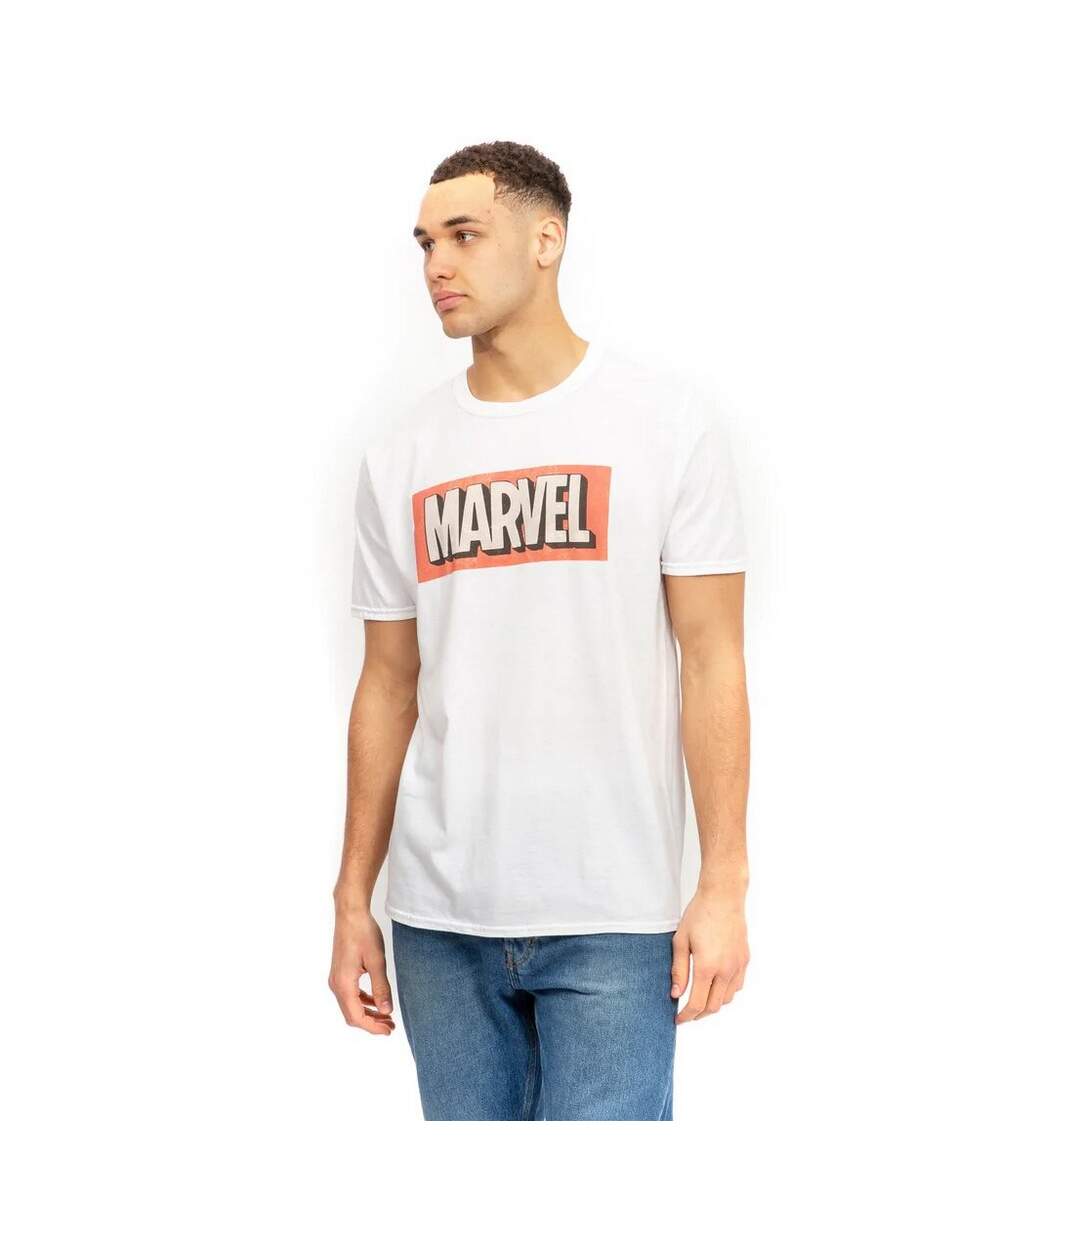 Marvel - T-shirt - Homme (Blanc) - UTTV615